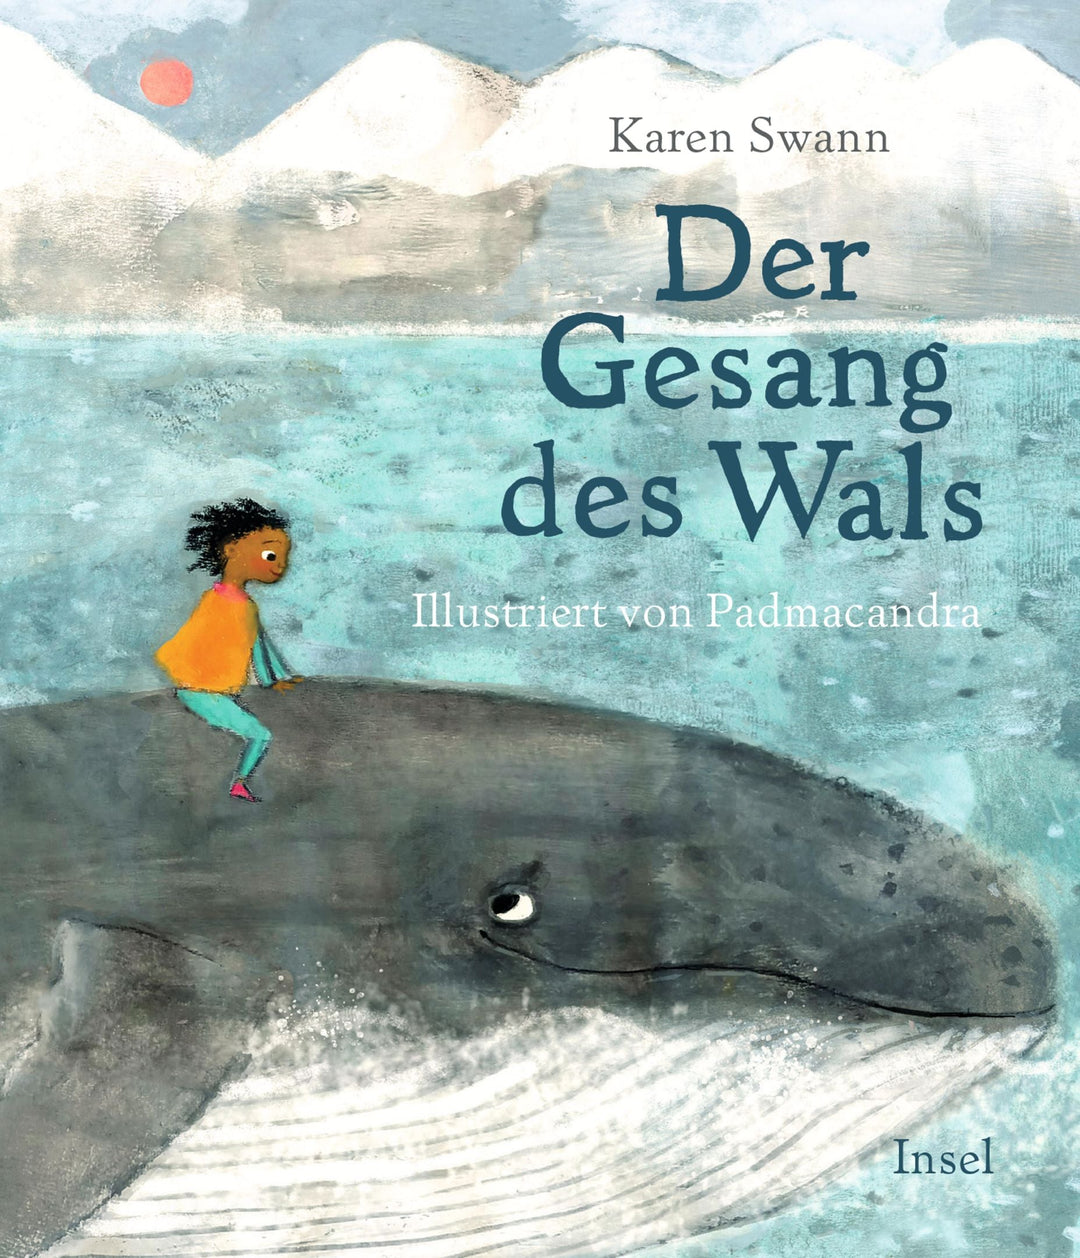 Insel Verlag Bilderbuch Der Gesang des Wals